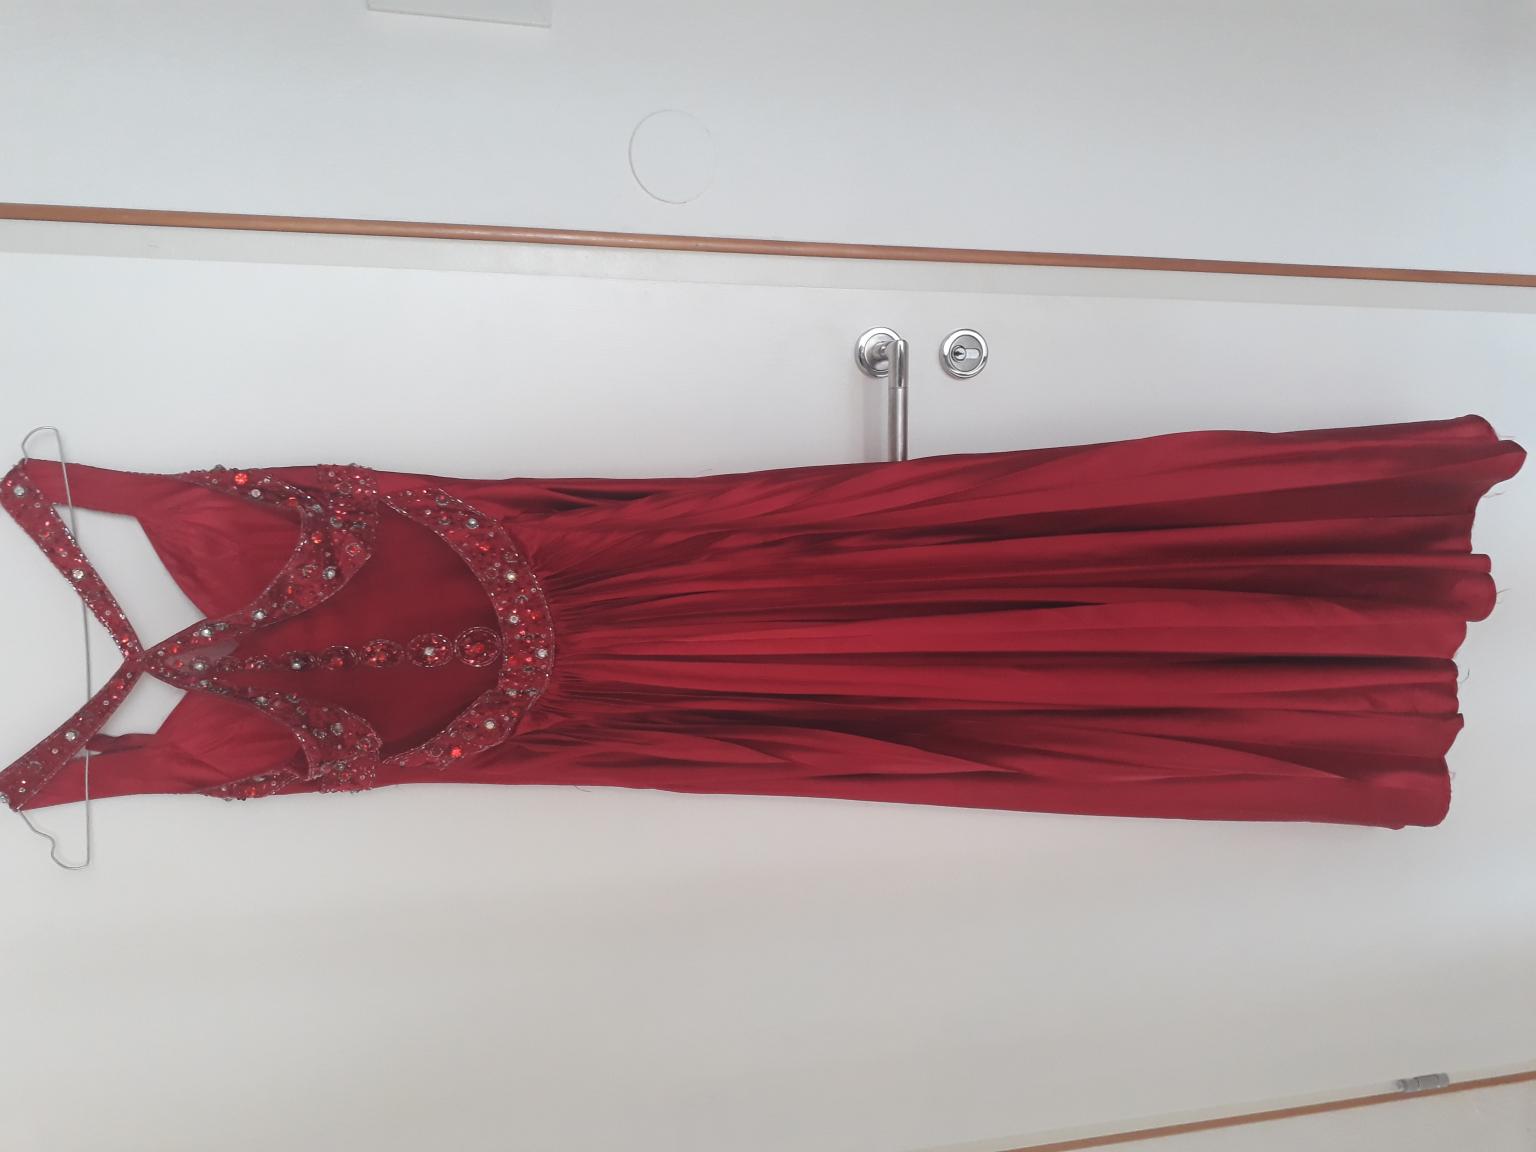 Kleid für hochzeit rotes langes 